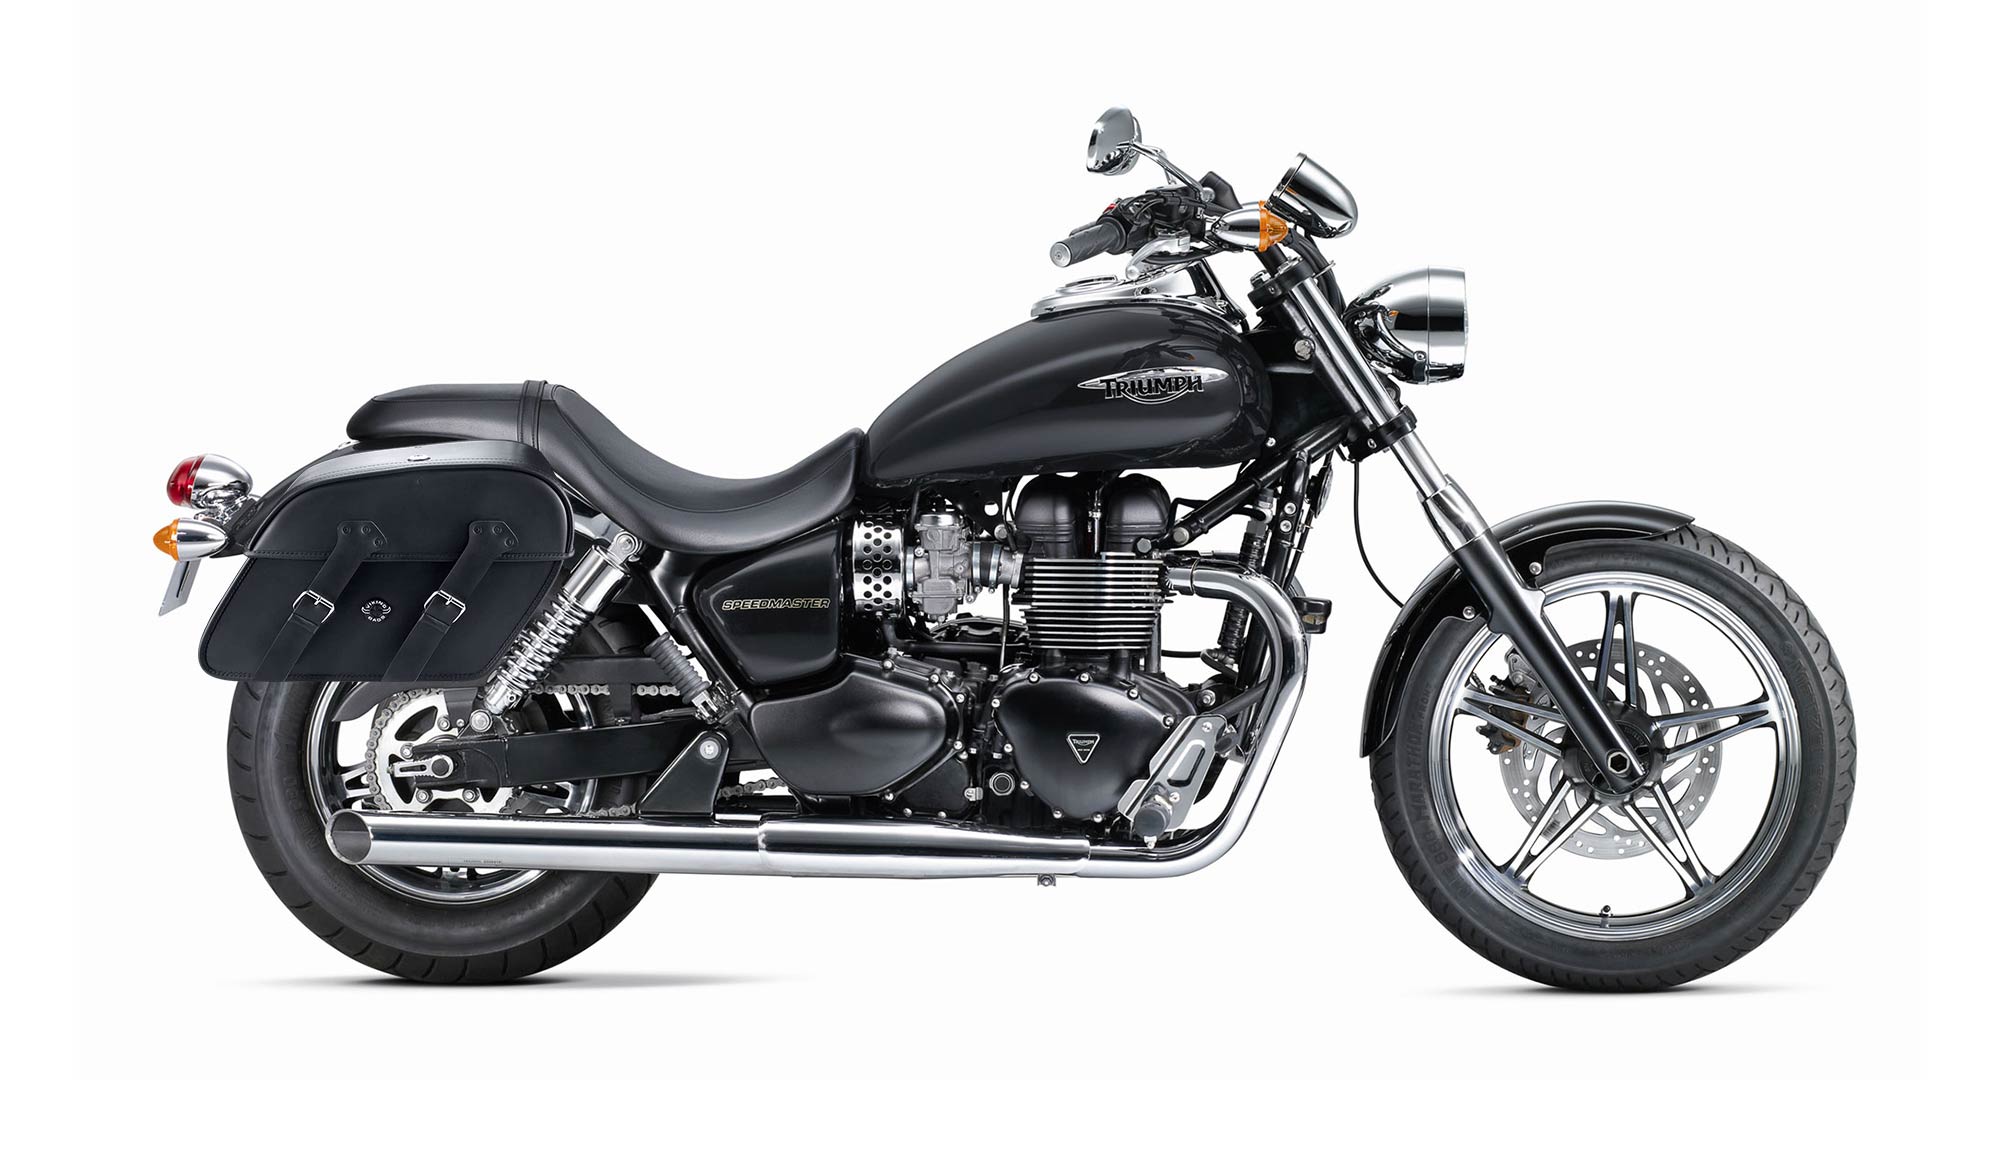 Viking Raven Large Triumph Speedmaster Motorcycle Leather Saddlebags on Bike Photo @expand